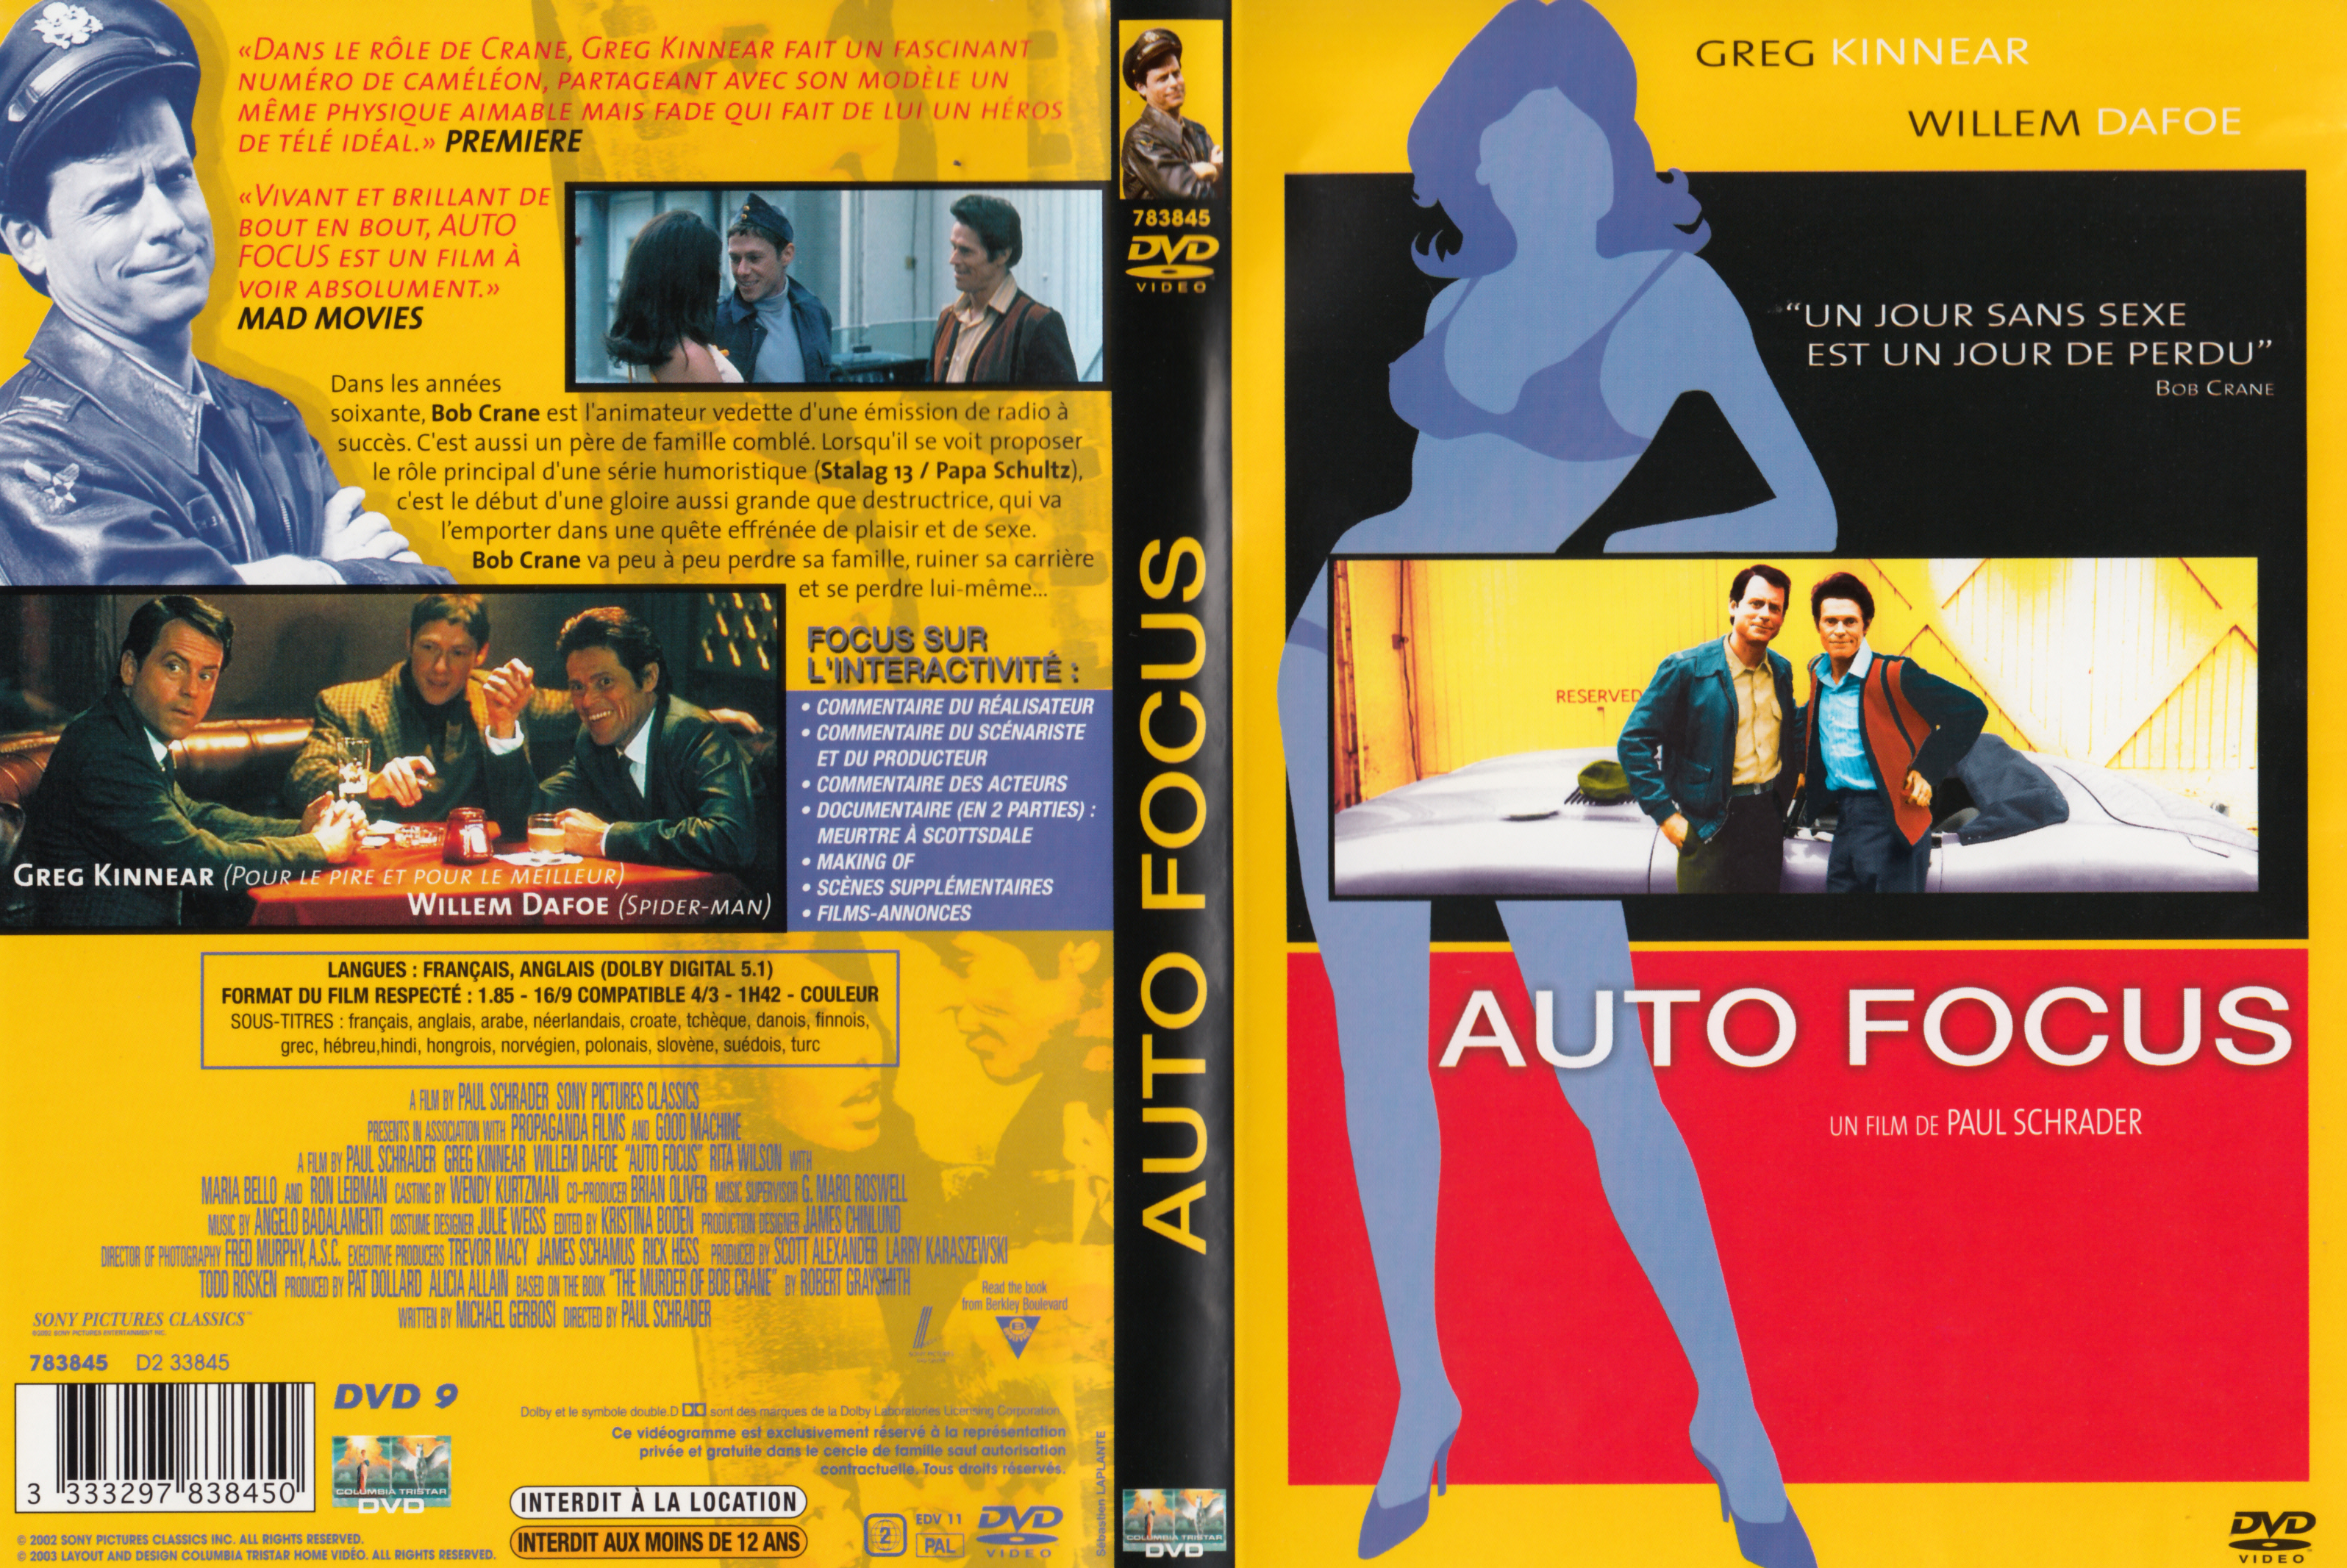 Jaquette DVD Auto focus